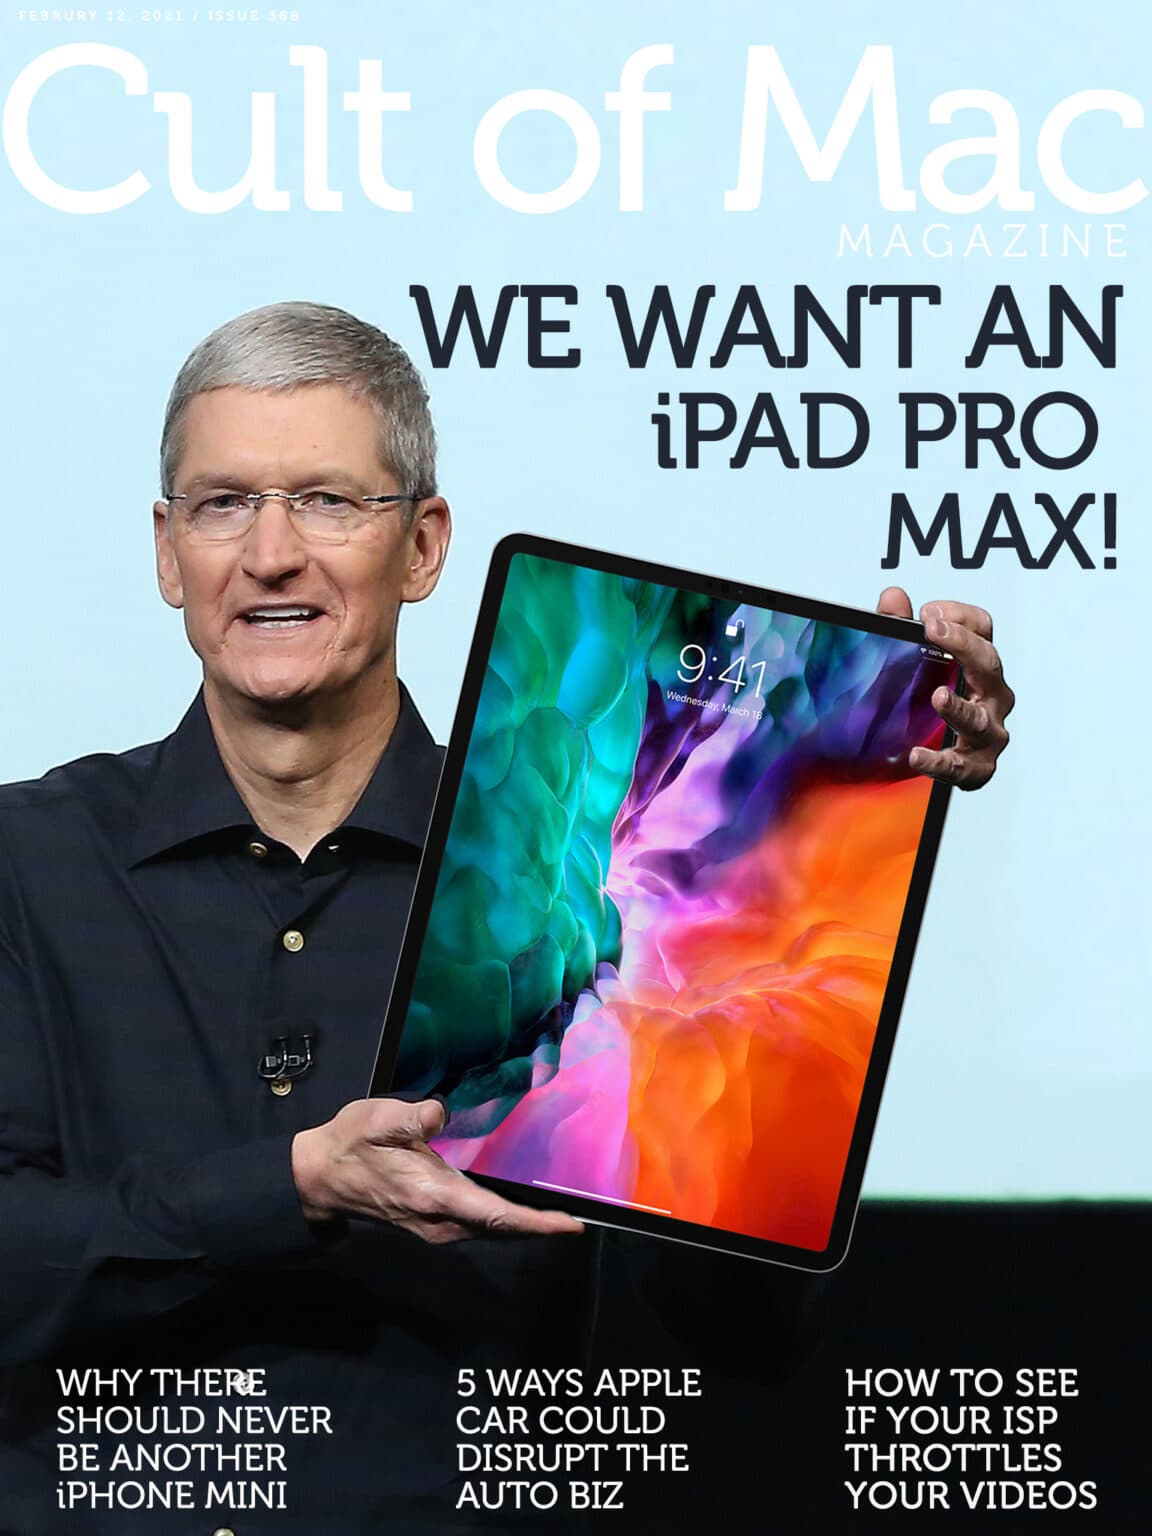 We want a bigger iPad -- call it an iPad Pro Max. Please make it happen, Tim!